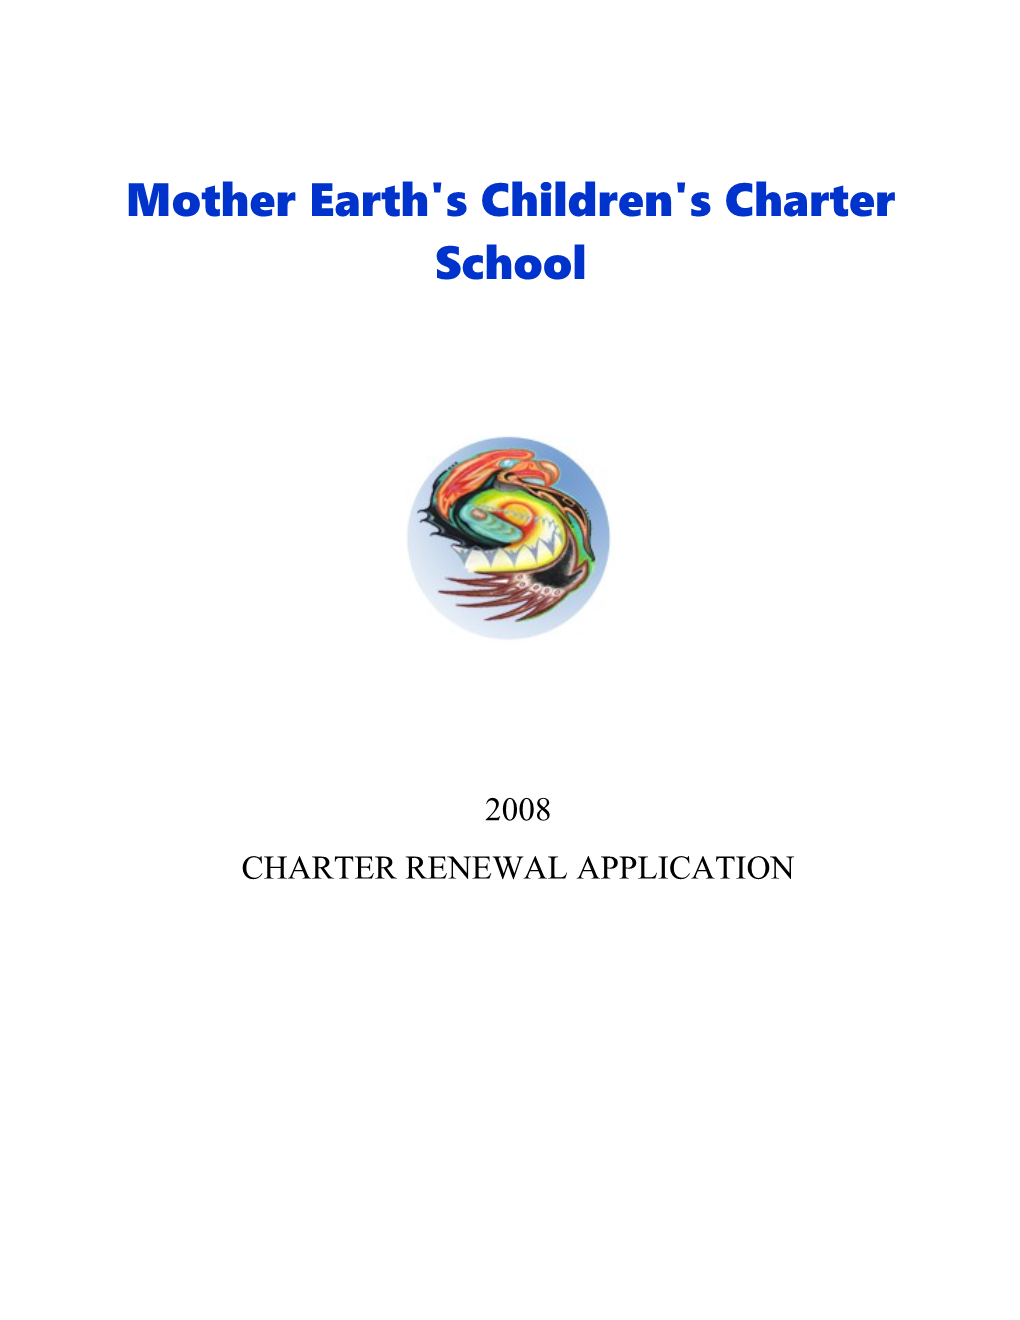 Mother Earth's Children's Charter School